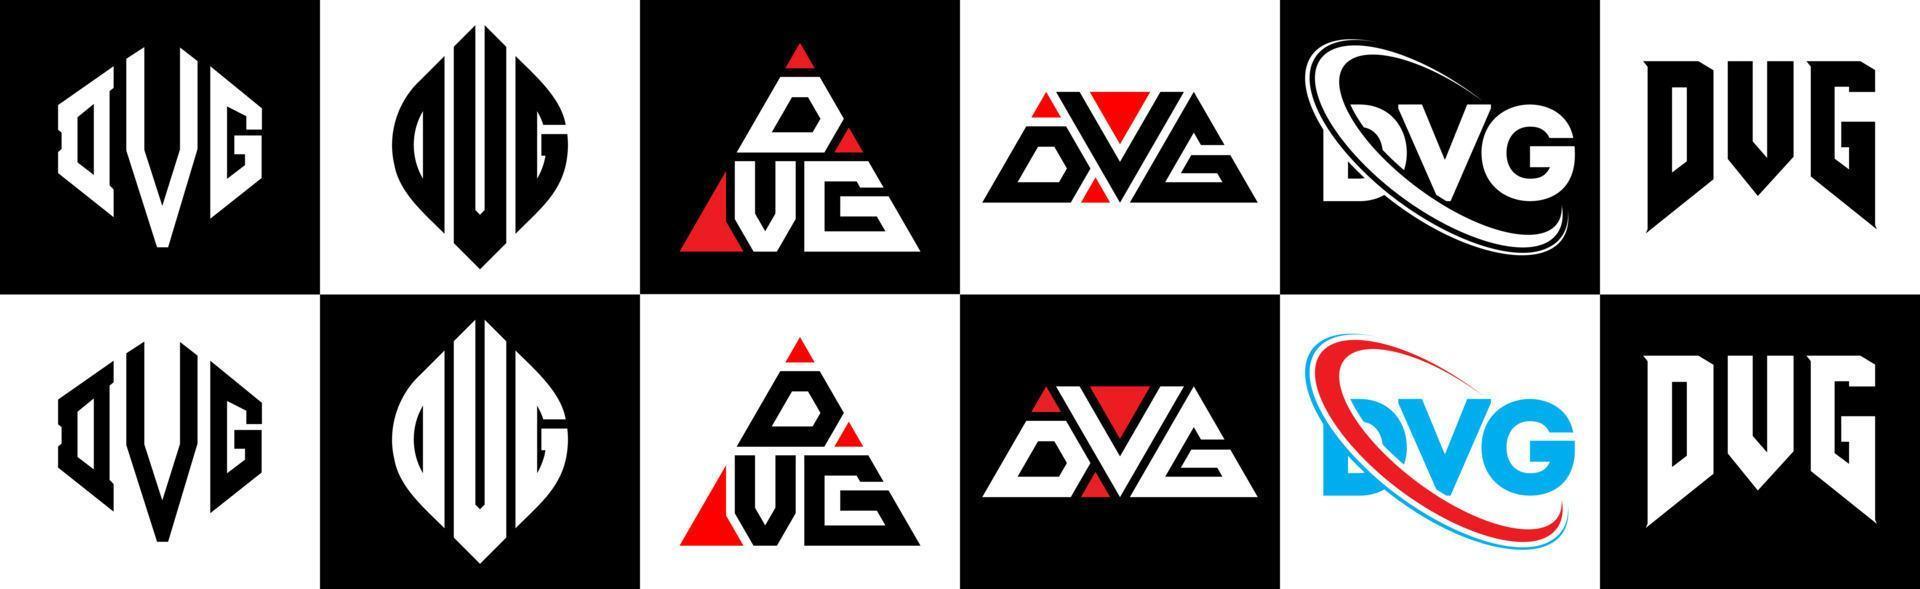 design de logotipo de carta dvg em seis estilo. dvg polígono, círculo, triângulo, hexágono, estilo plano e simples com logotipo de letra de variação de cor preto e branco definido em uma prancheta. dvg logotipo minimalista e clássico vetor